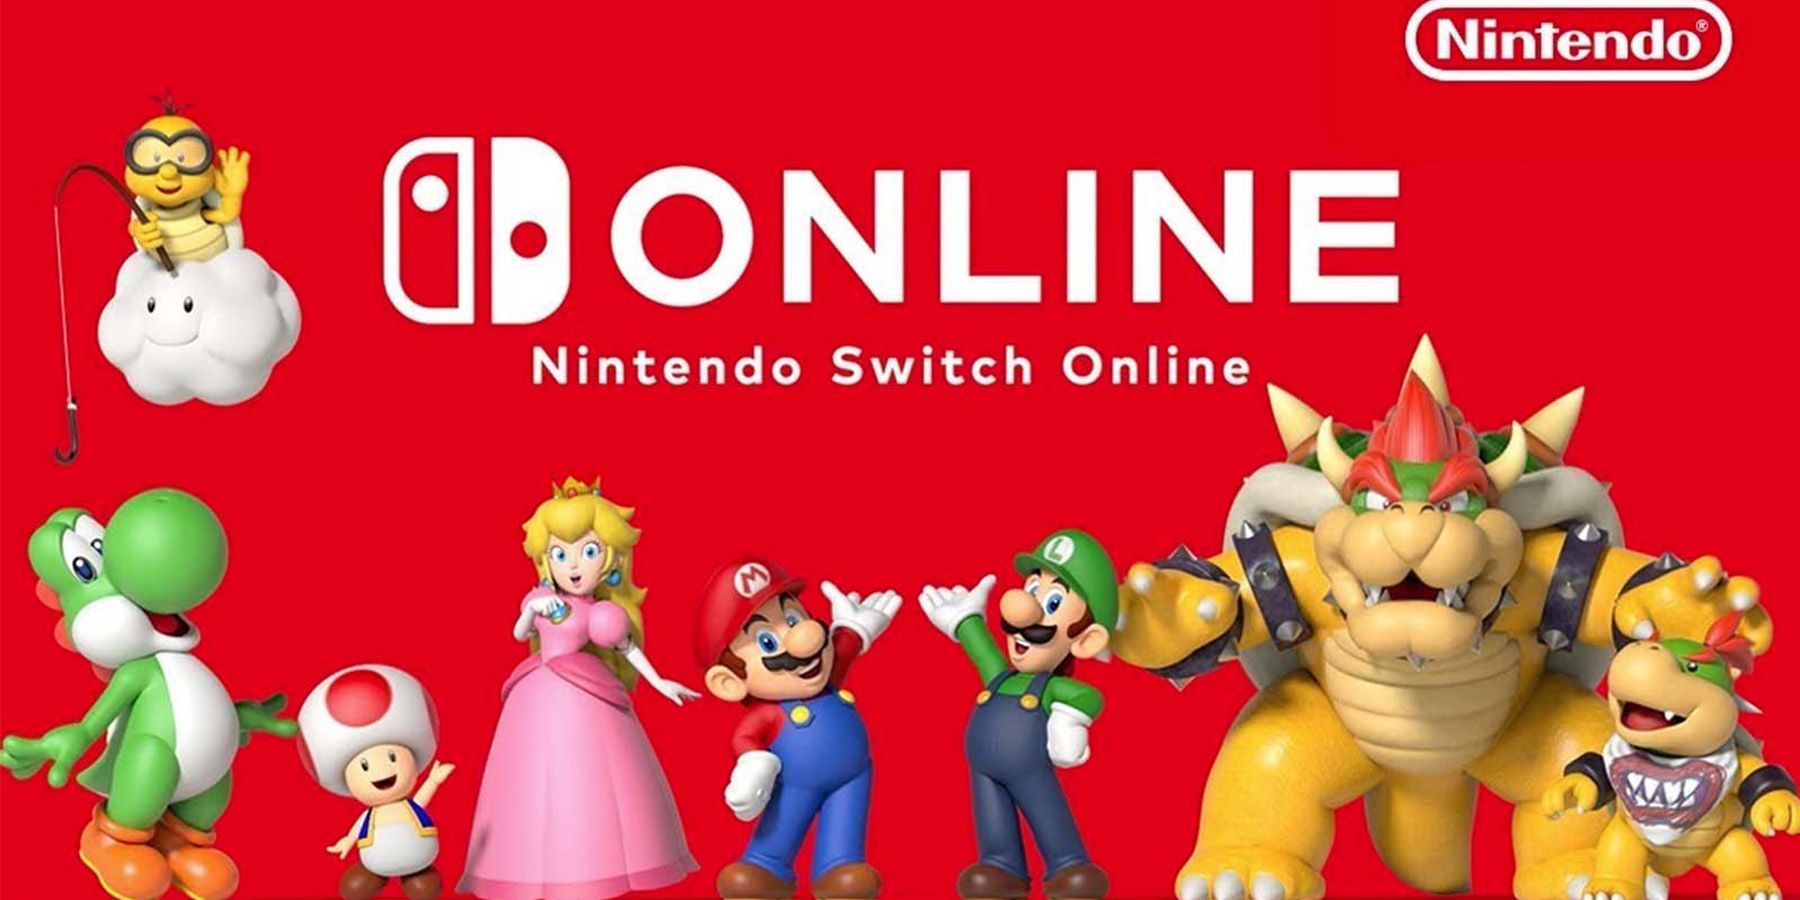 Er Nintendo Switch Online utvidelsespakke verdt prisen nå?